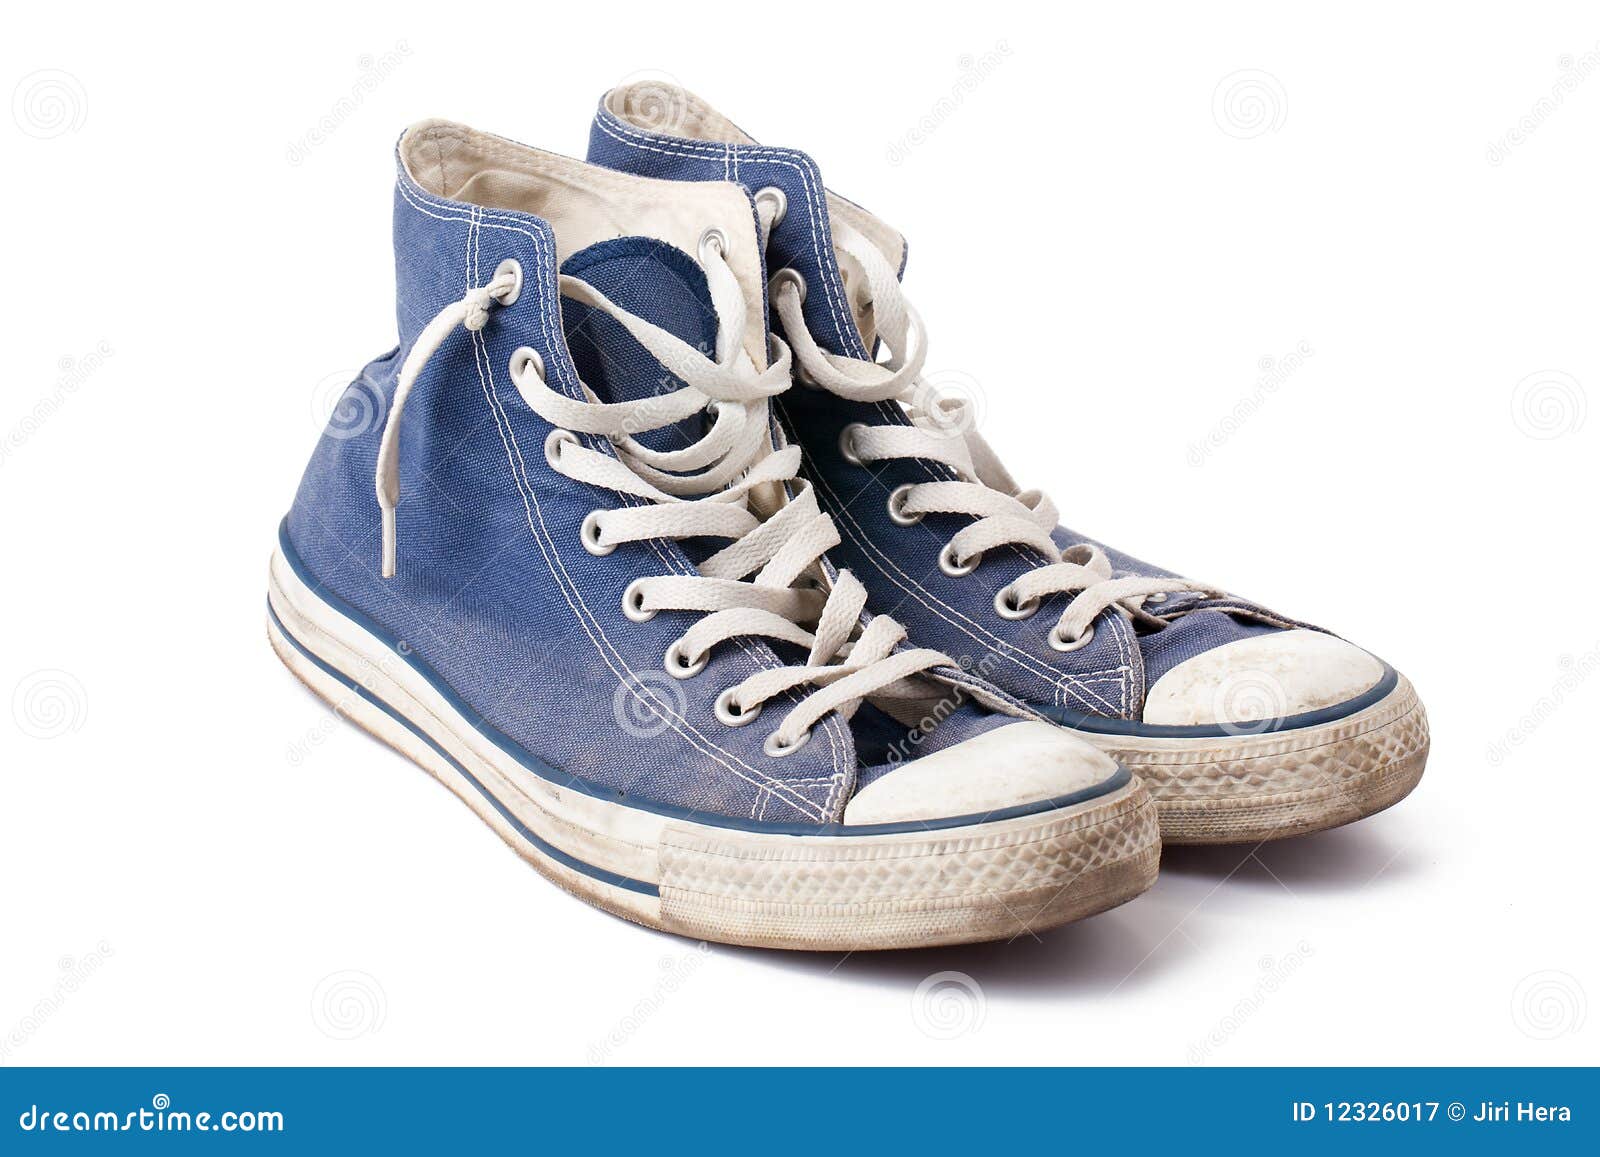 Blue sneakers stock image. Image of footwear, athletic - 12326017